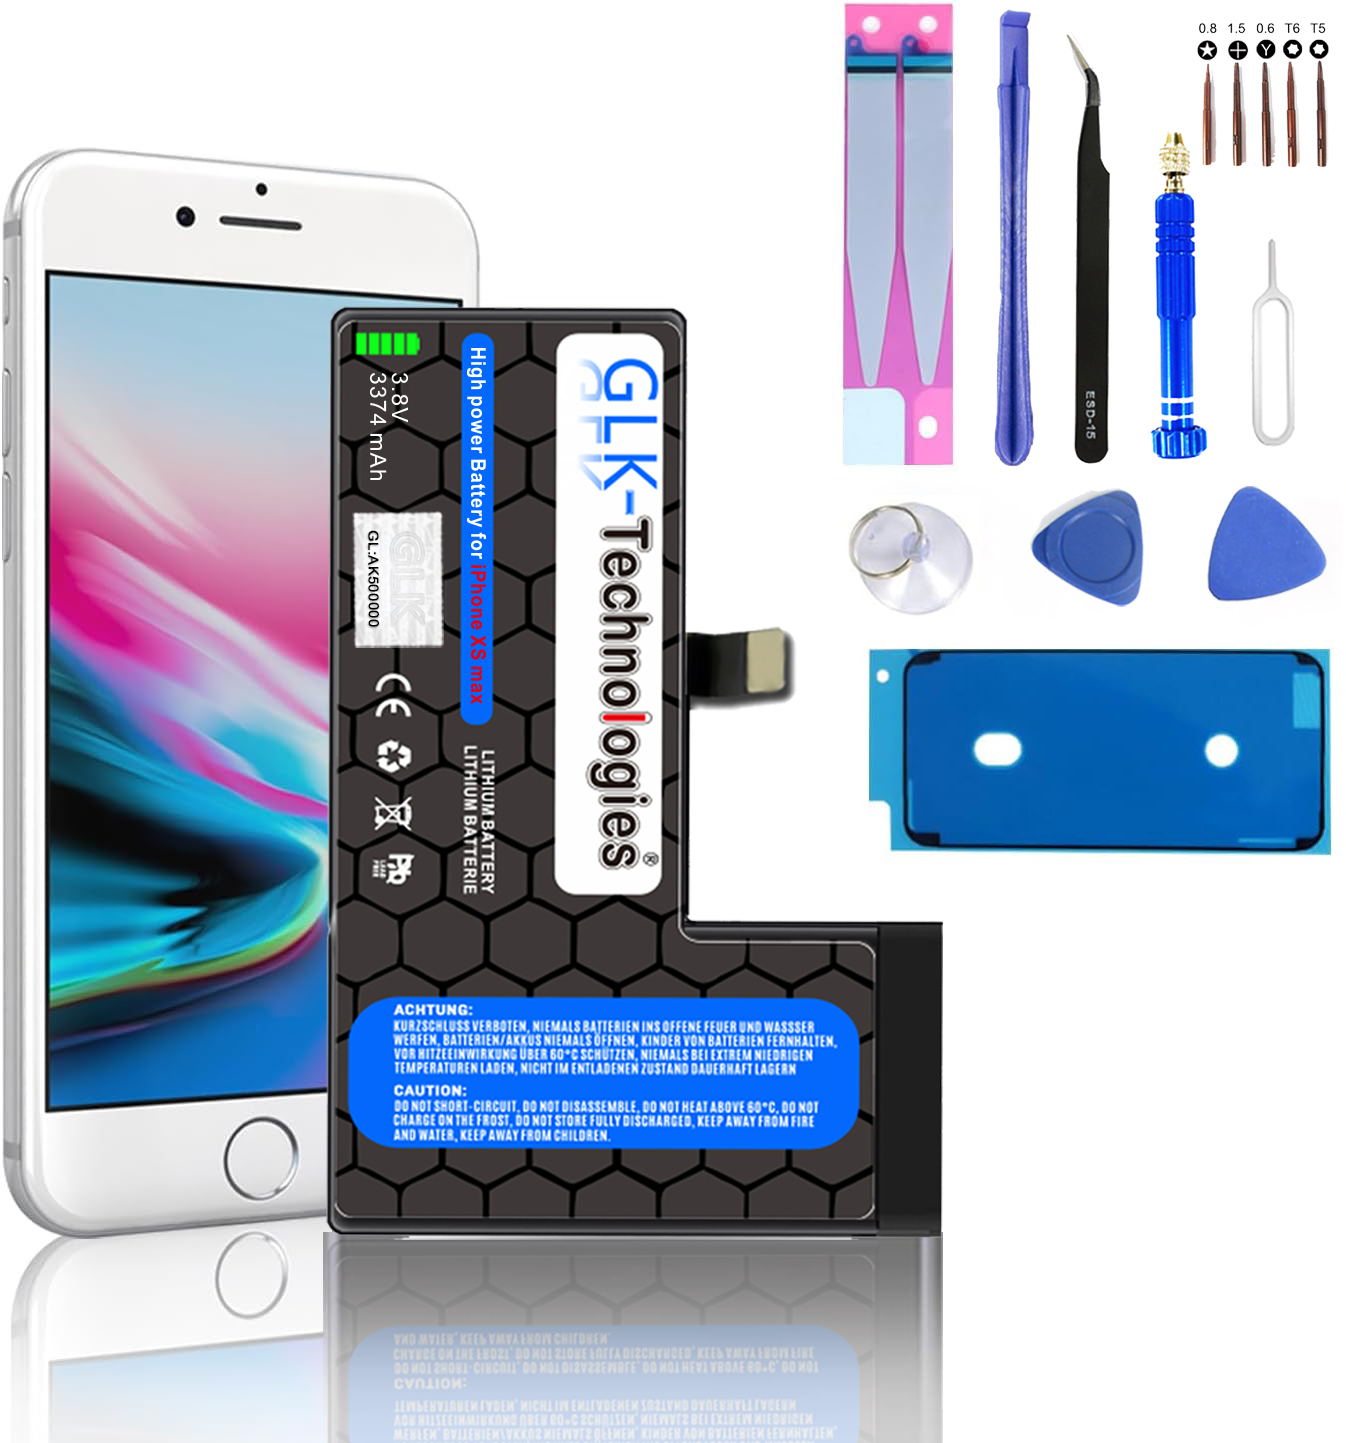 MAX mAh iPhone Ersatz Lithium-Ionen-Akku 2930 Werkzeug GLK-TECHNOLOGIES PROFI inkl. Smartphone Akku, XS